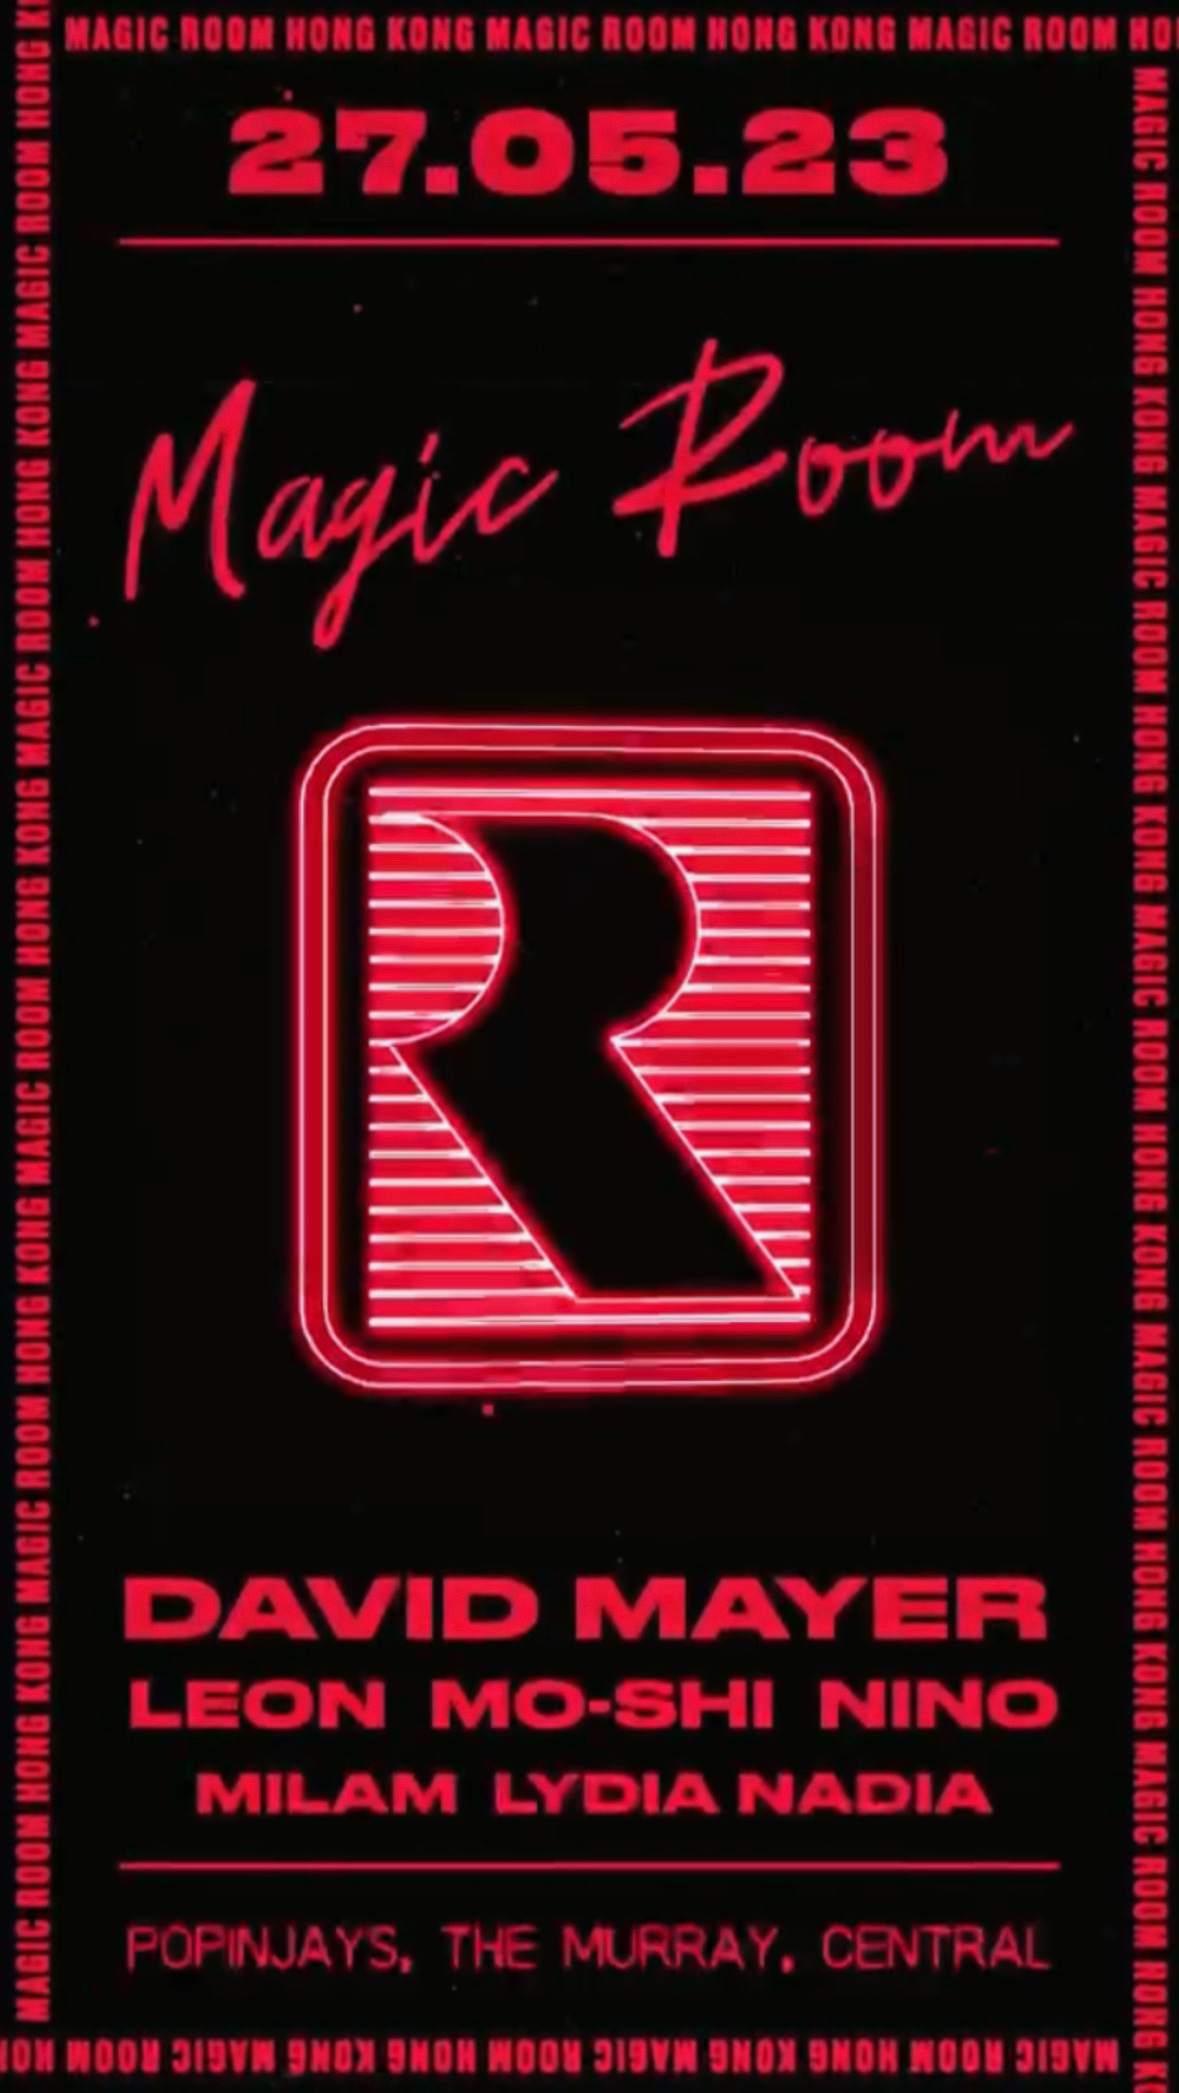 Magic Room - David Mayer - Hong Kong - フライヤー表